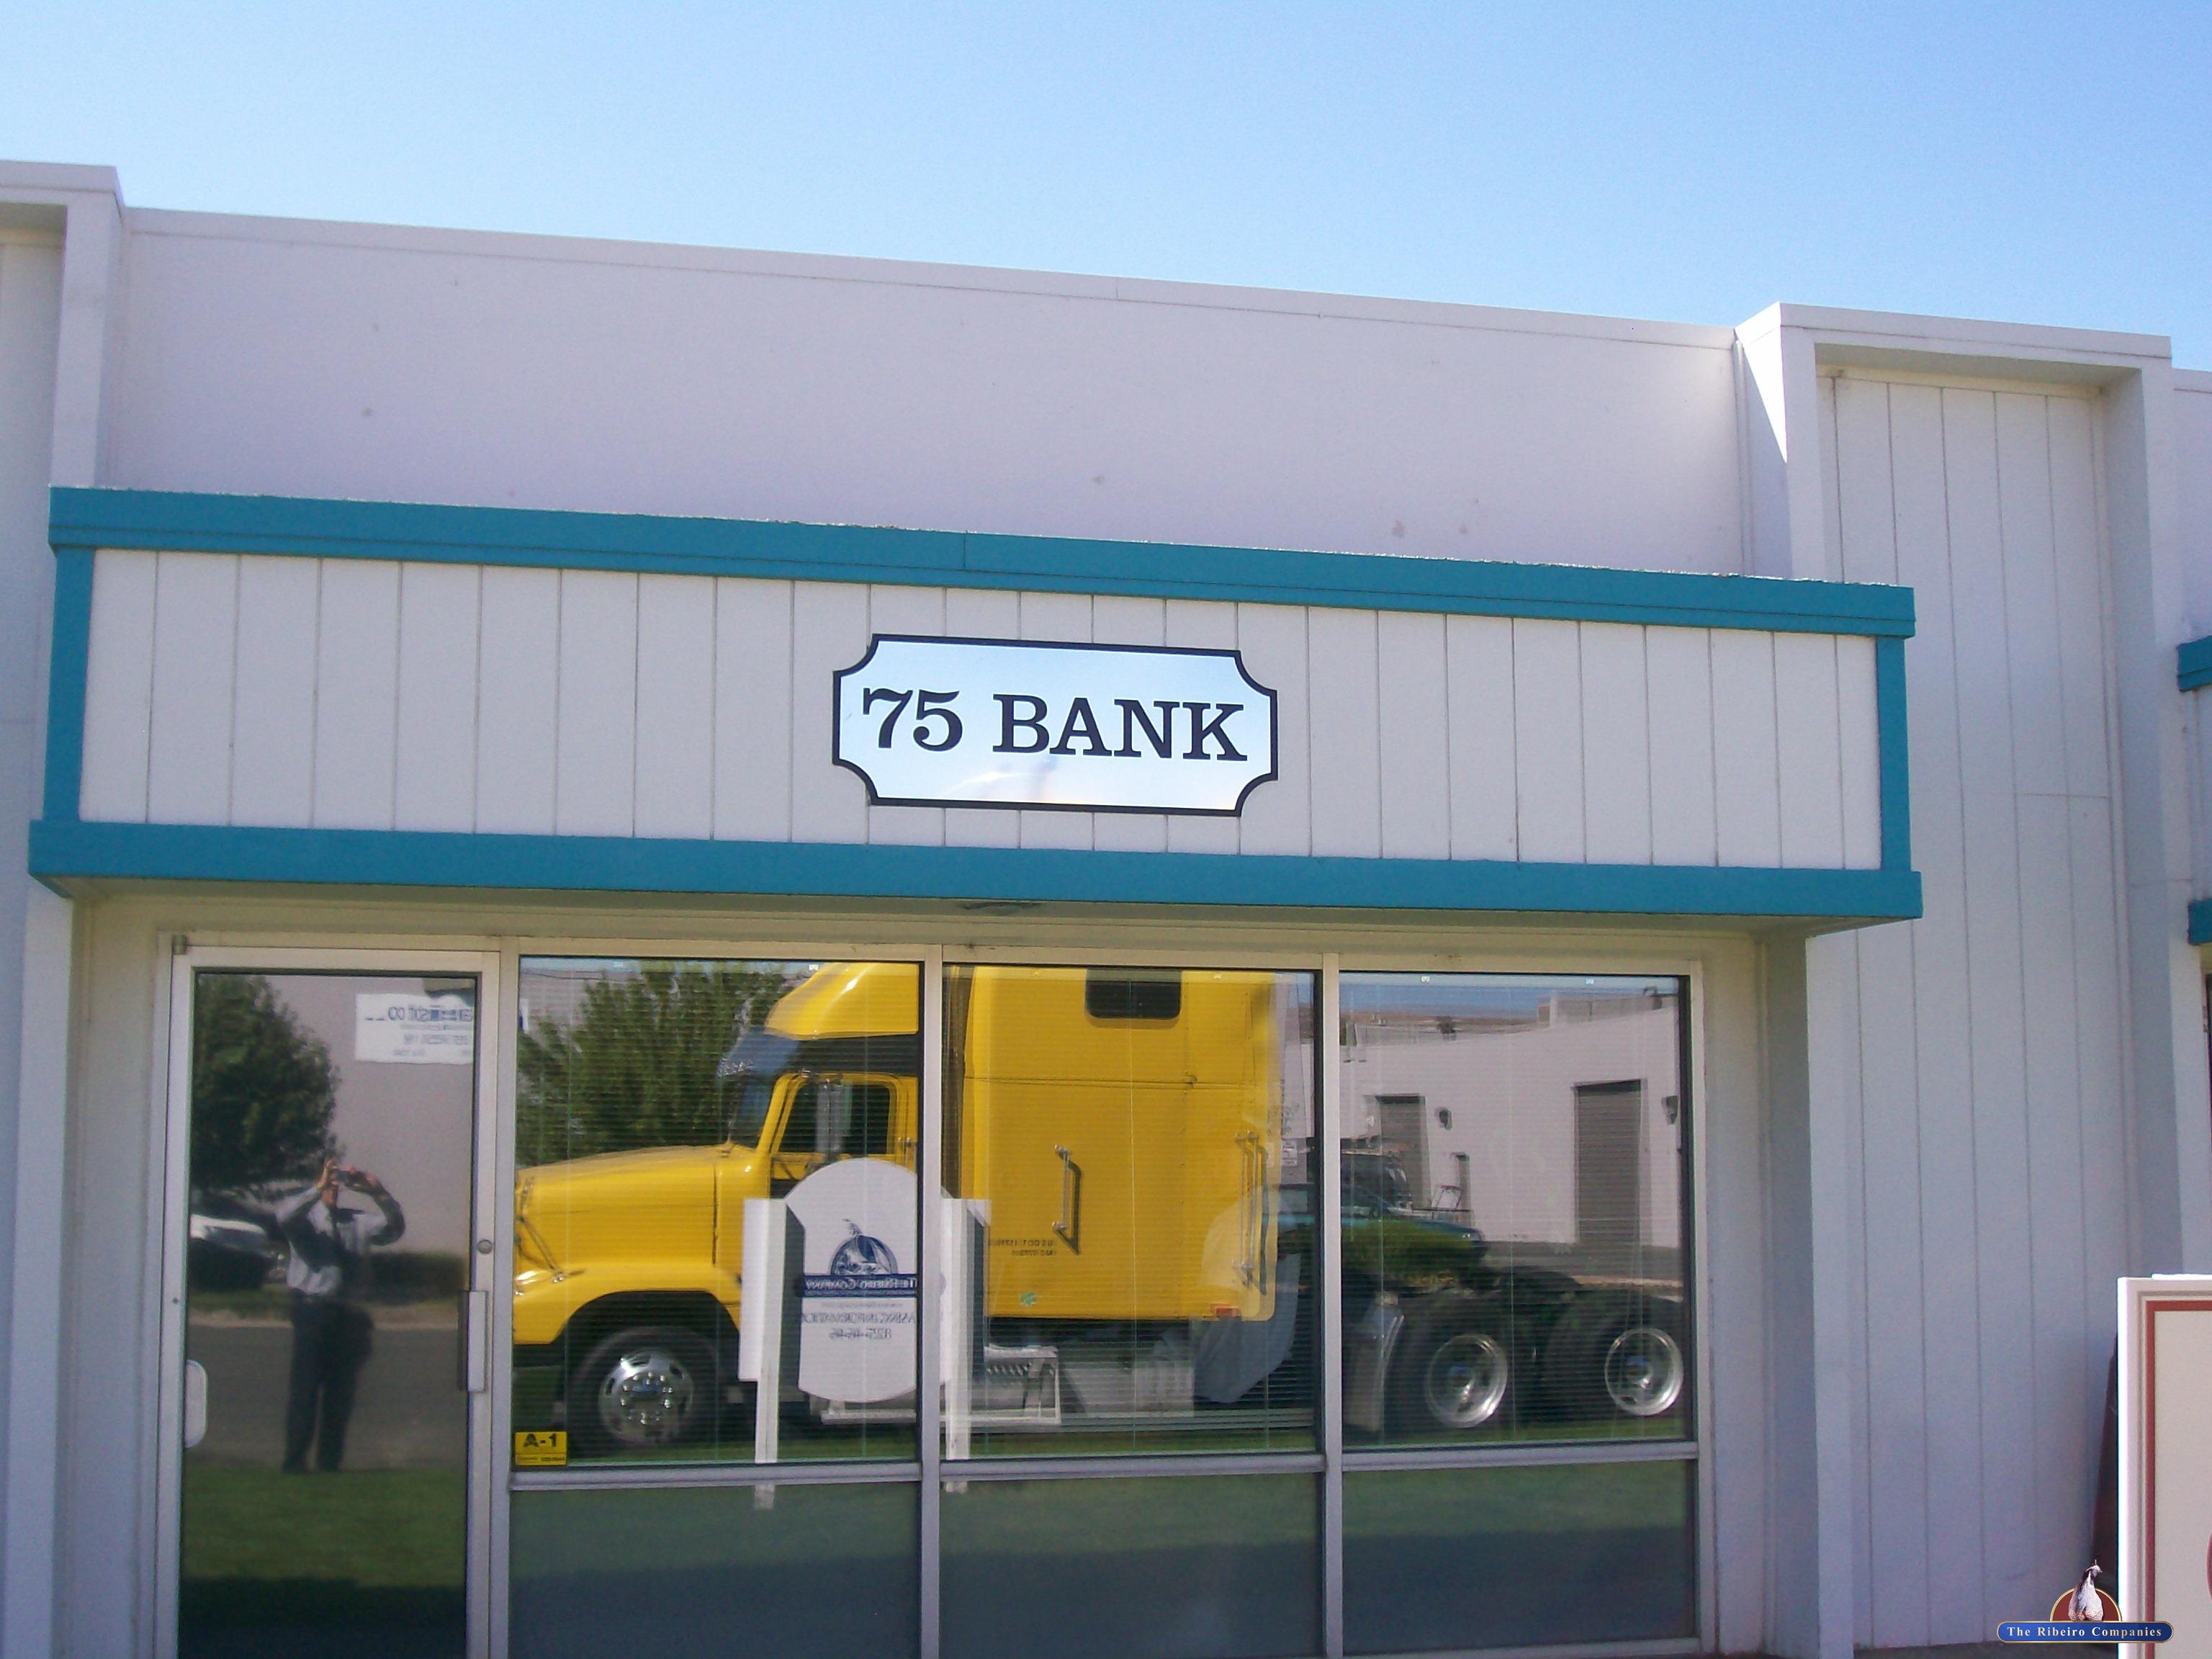 75 Bank St, Sparks, NV 89431 – Unit 15